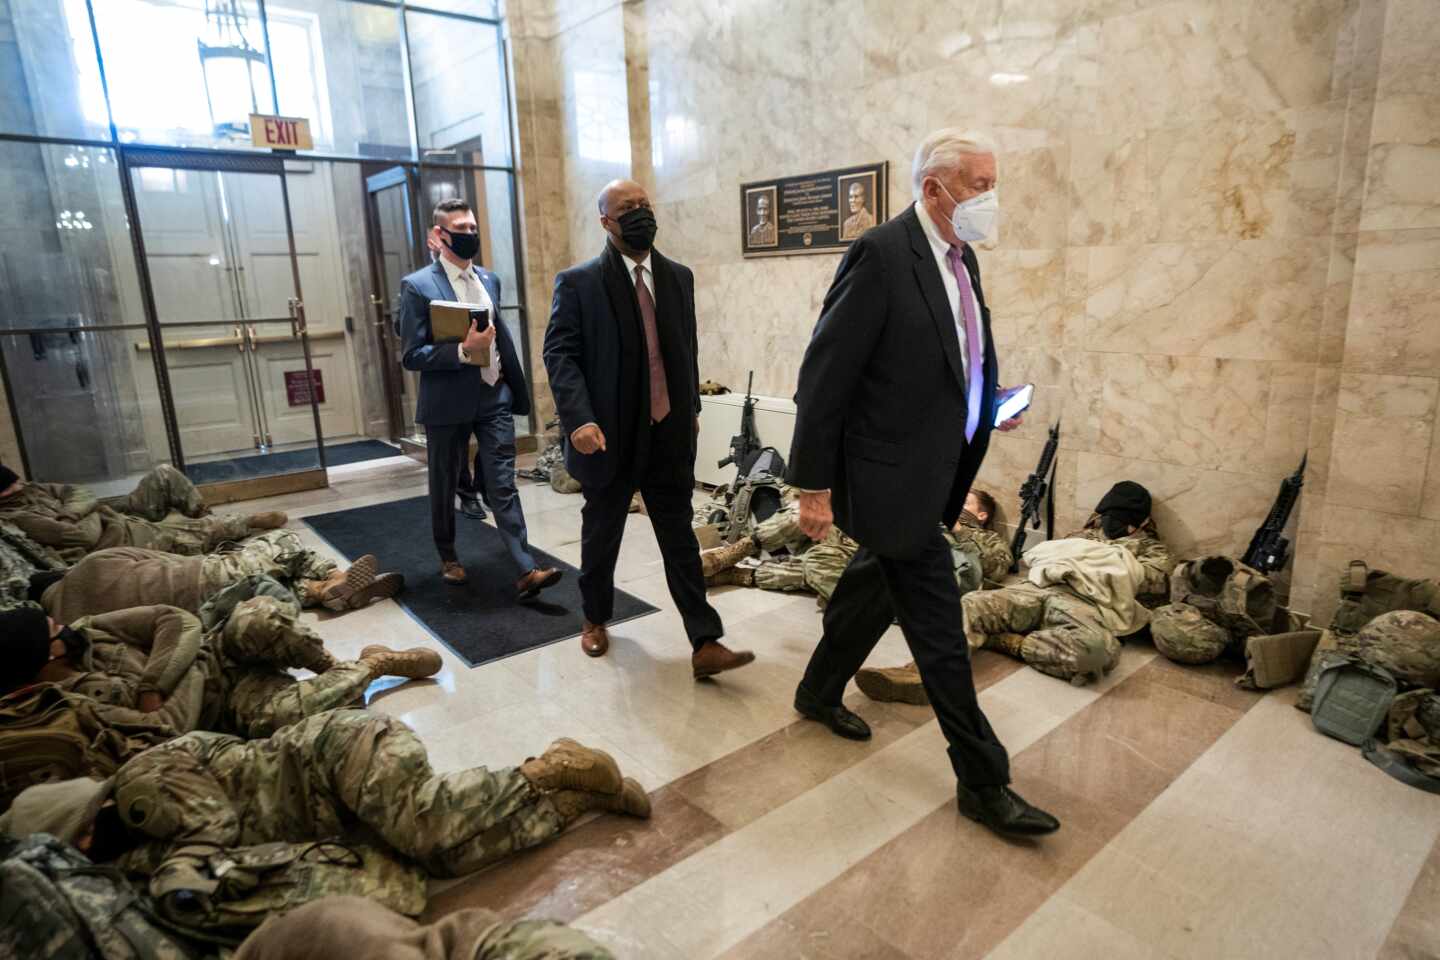 El líder de la mayoría, Steny Hoyer, pasa junto a miembros de la Guardia Nacional que intentan dormir dentro del Capitolio.